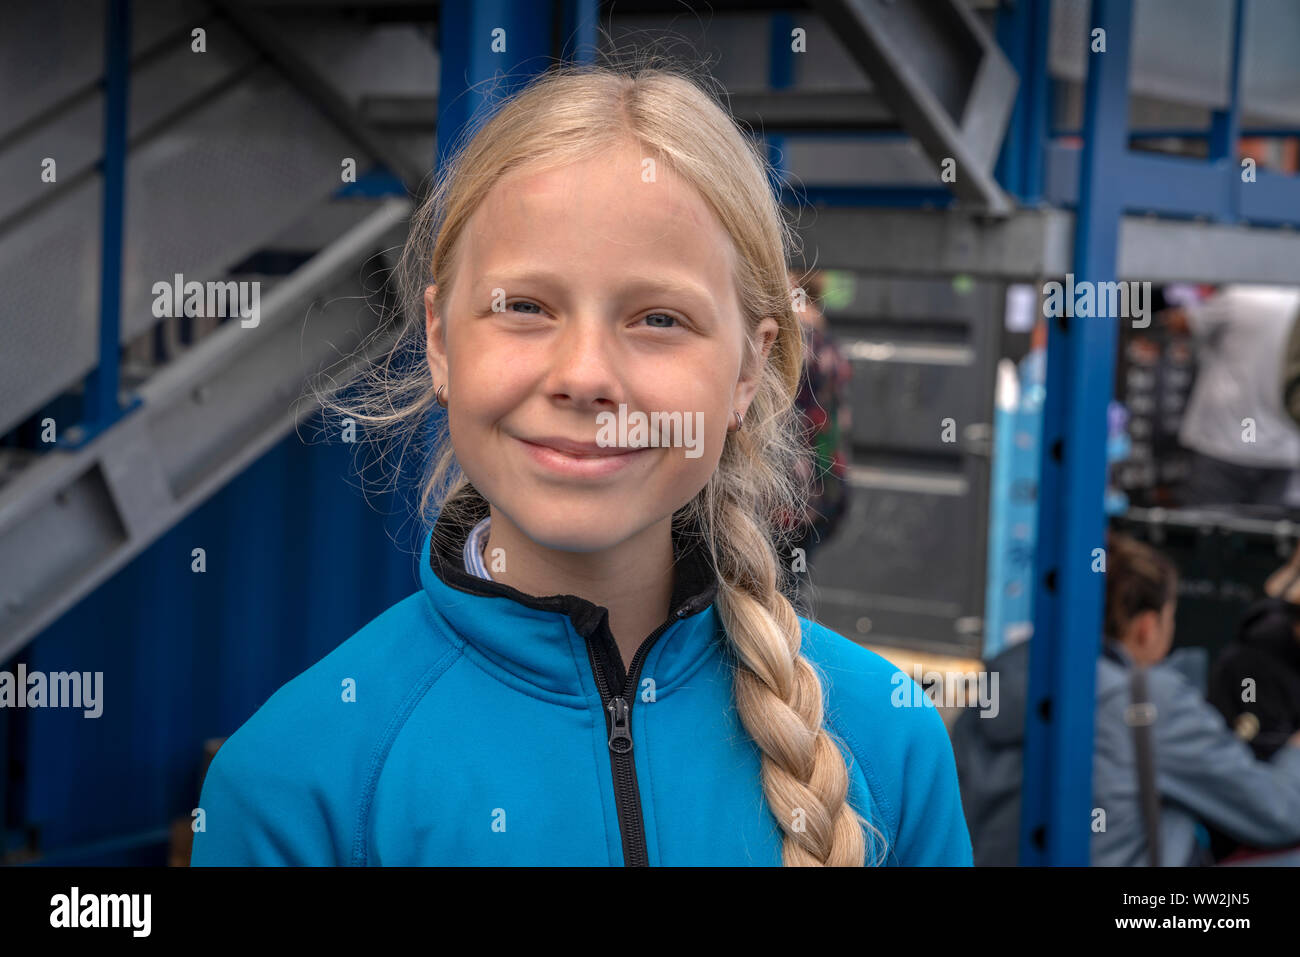 Jeune fille à l'alimentation de rue, Festival de Reykjavik Reykjavik, Islande Banque D'Images